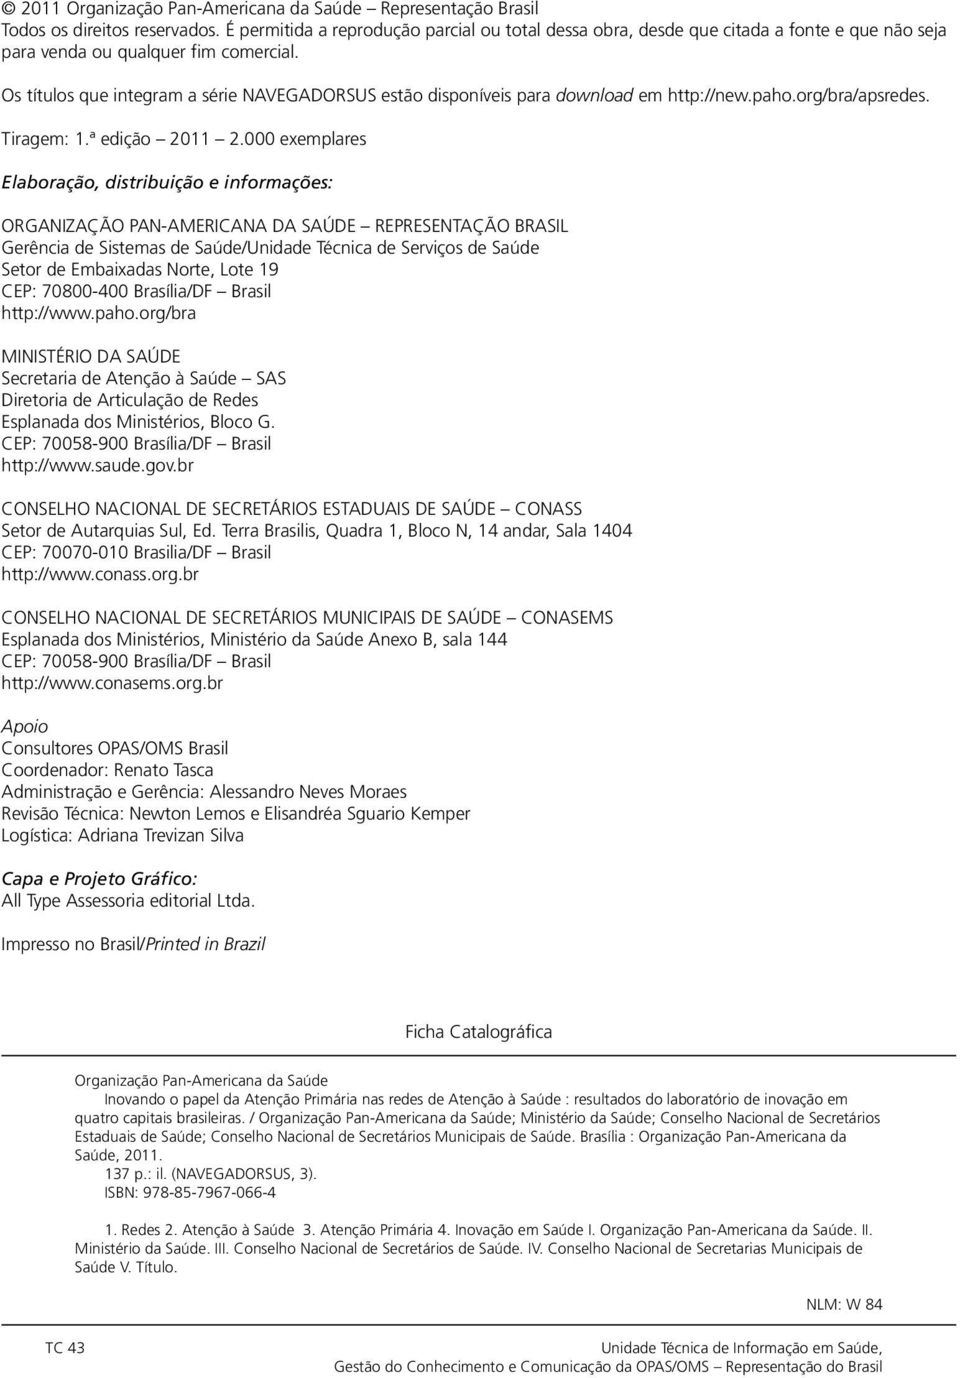 Os títulos que integram a série NAVEGADORSUS estão disponíveis para download em http://new.paho.org/bra/apsredes. Tiragem: 1.ª edição 2011 2.